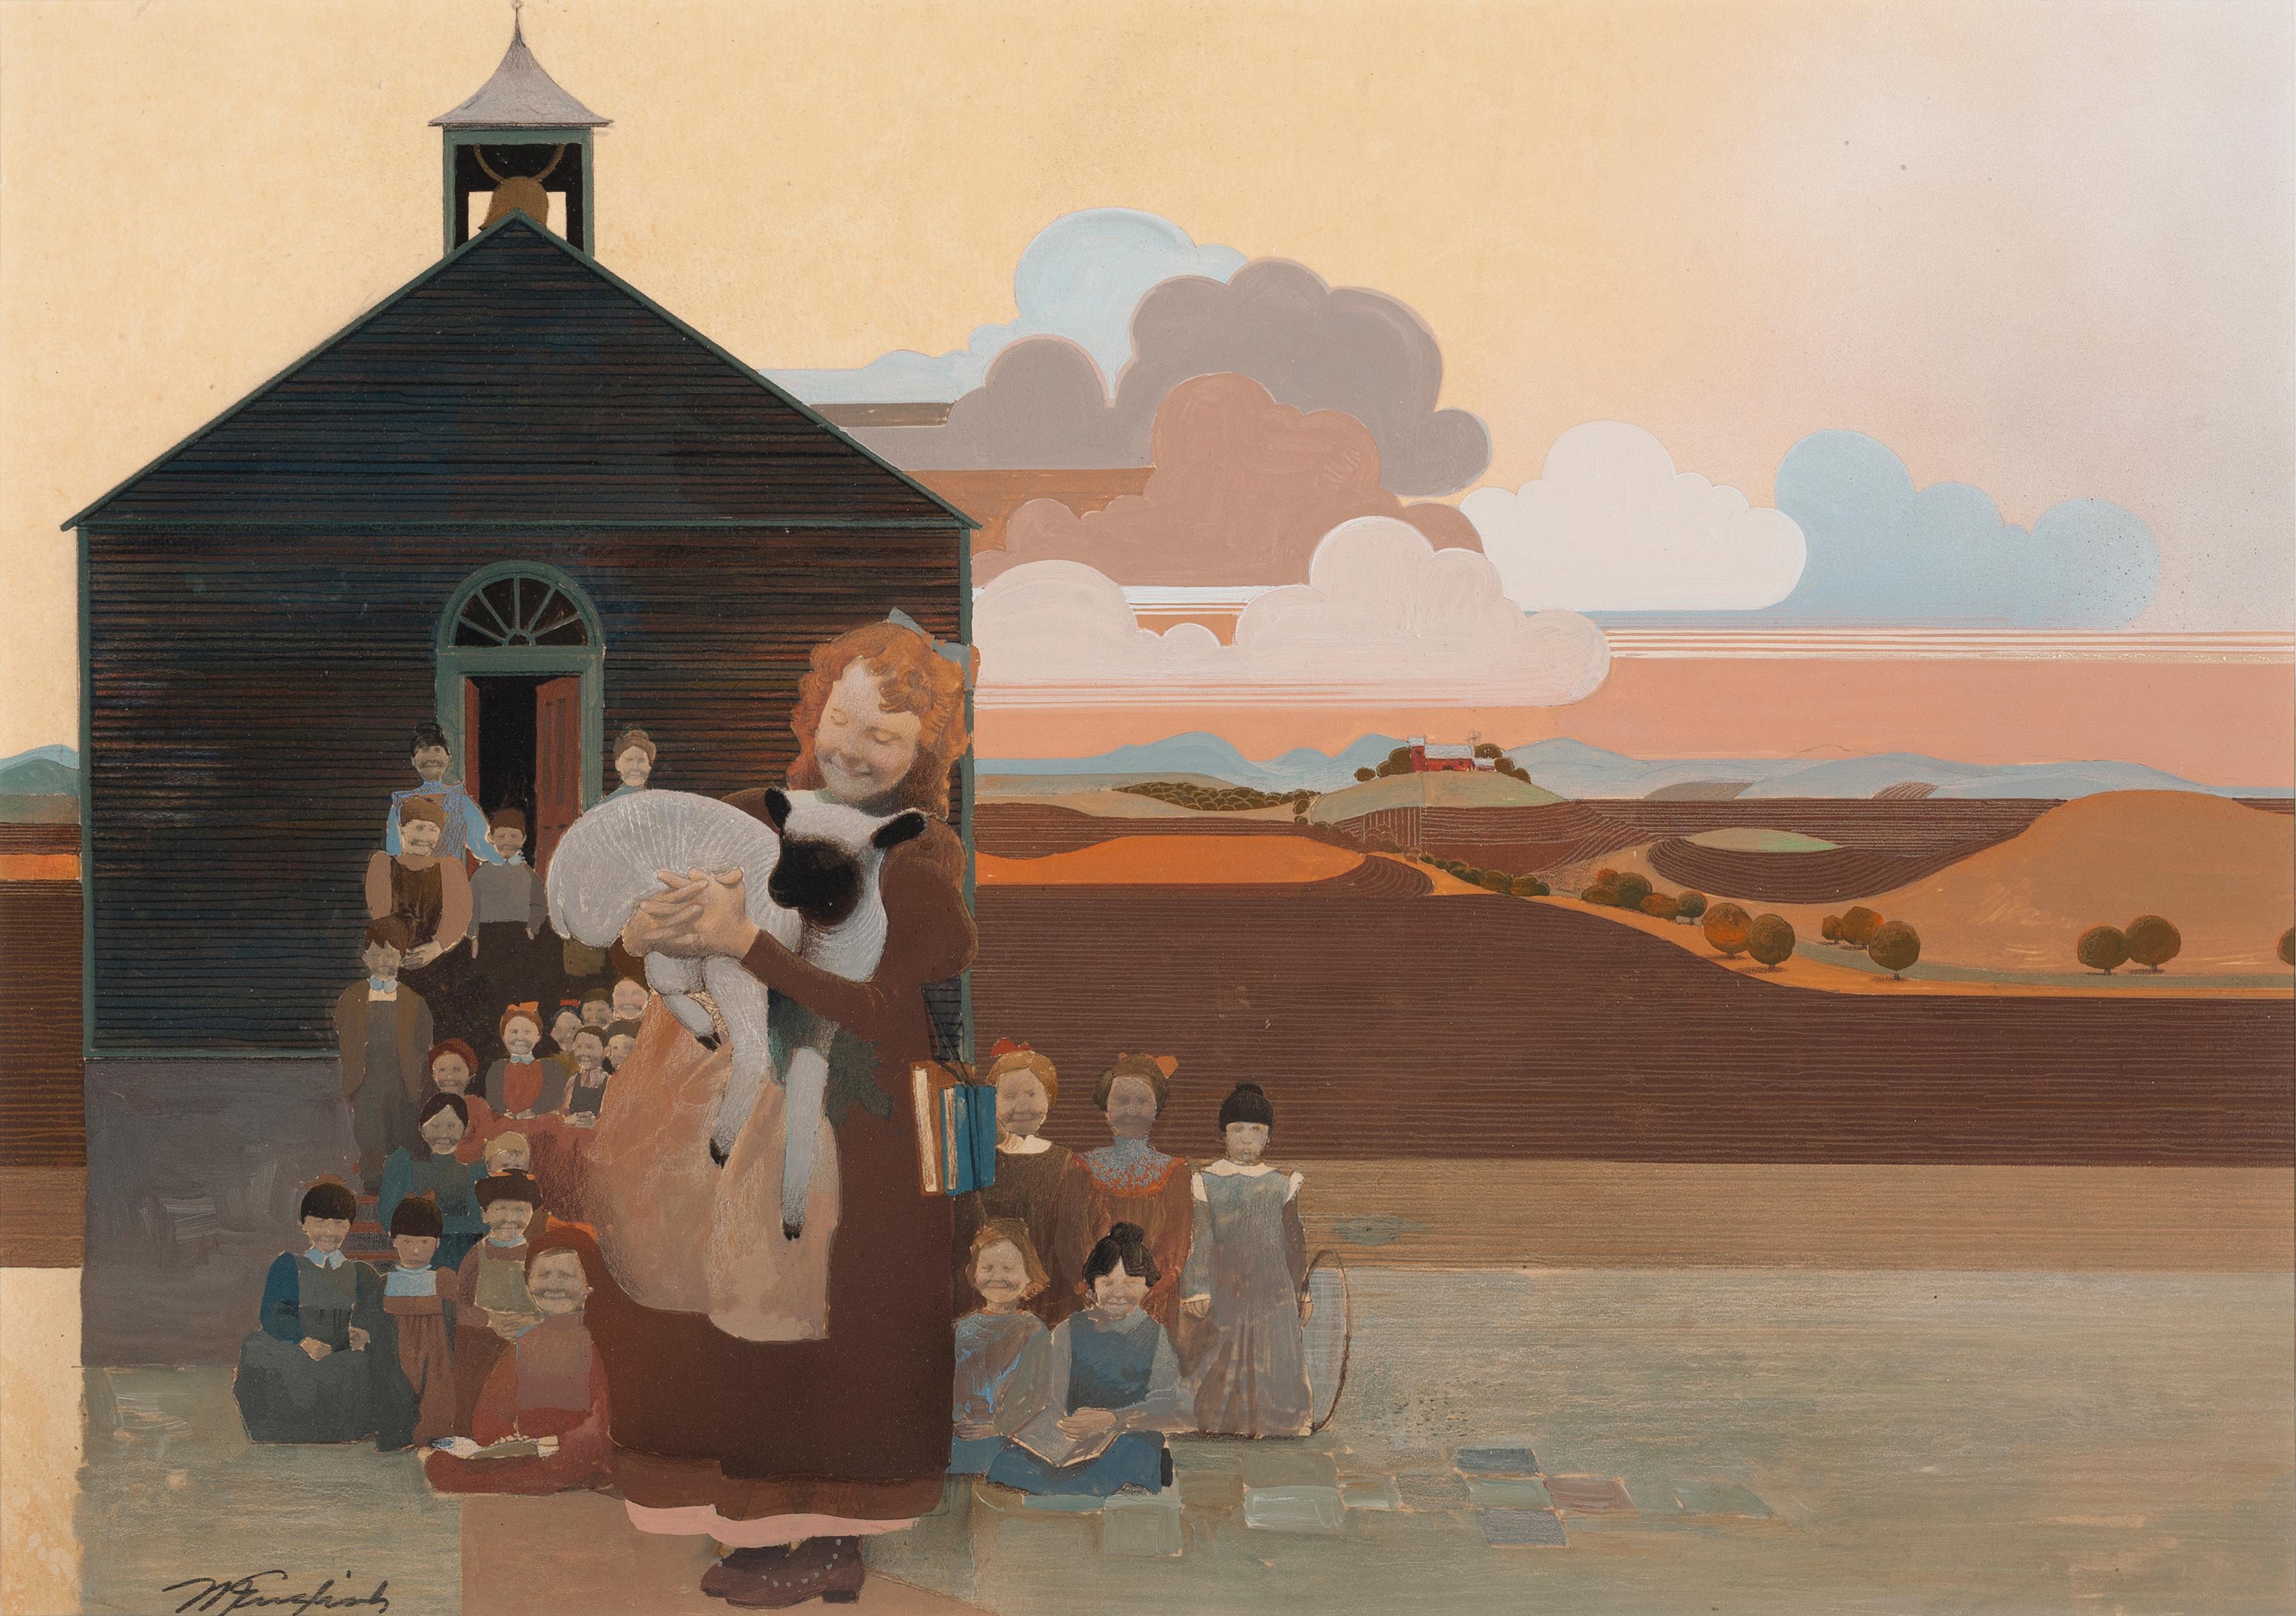 Mary hatte ein kleines Lamm – Painting von Mark English